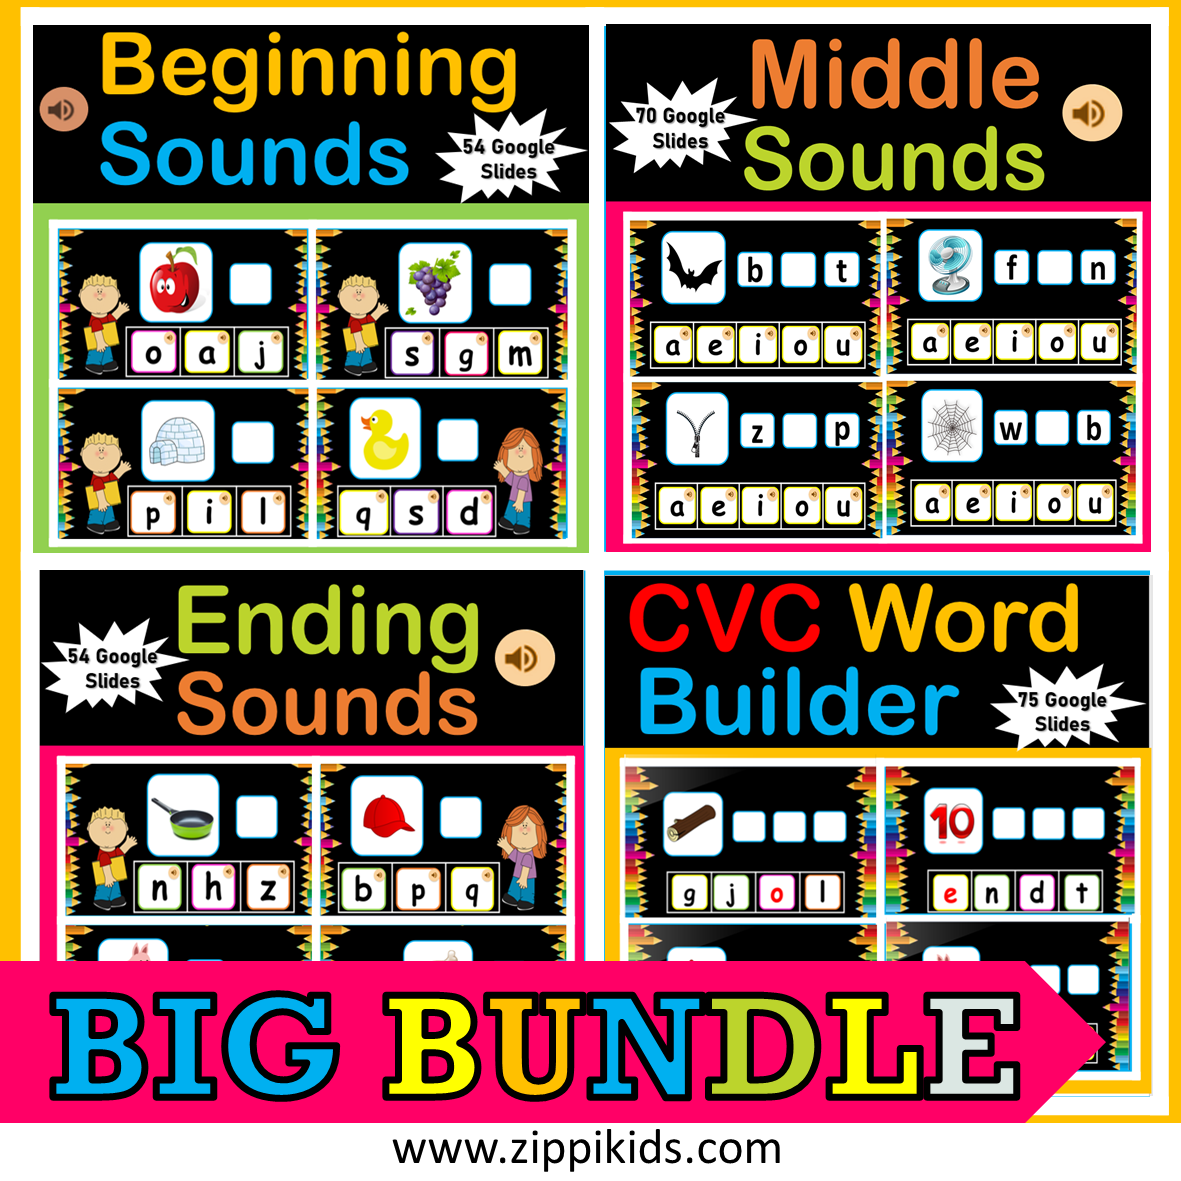 Beginning Sounds, Middle, Ending Sounds & CVC Words BIG BUNDLE - 250 Google Slides